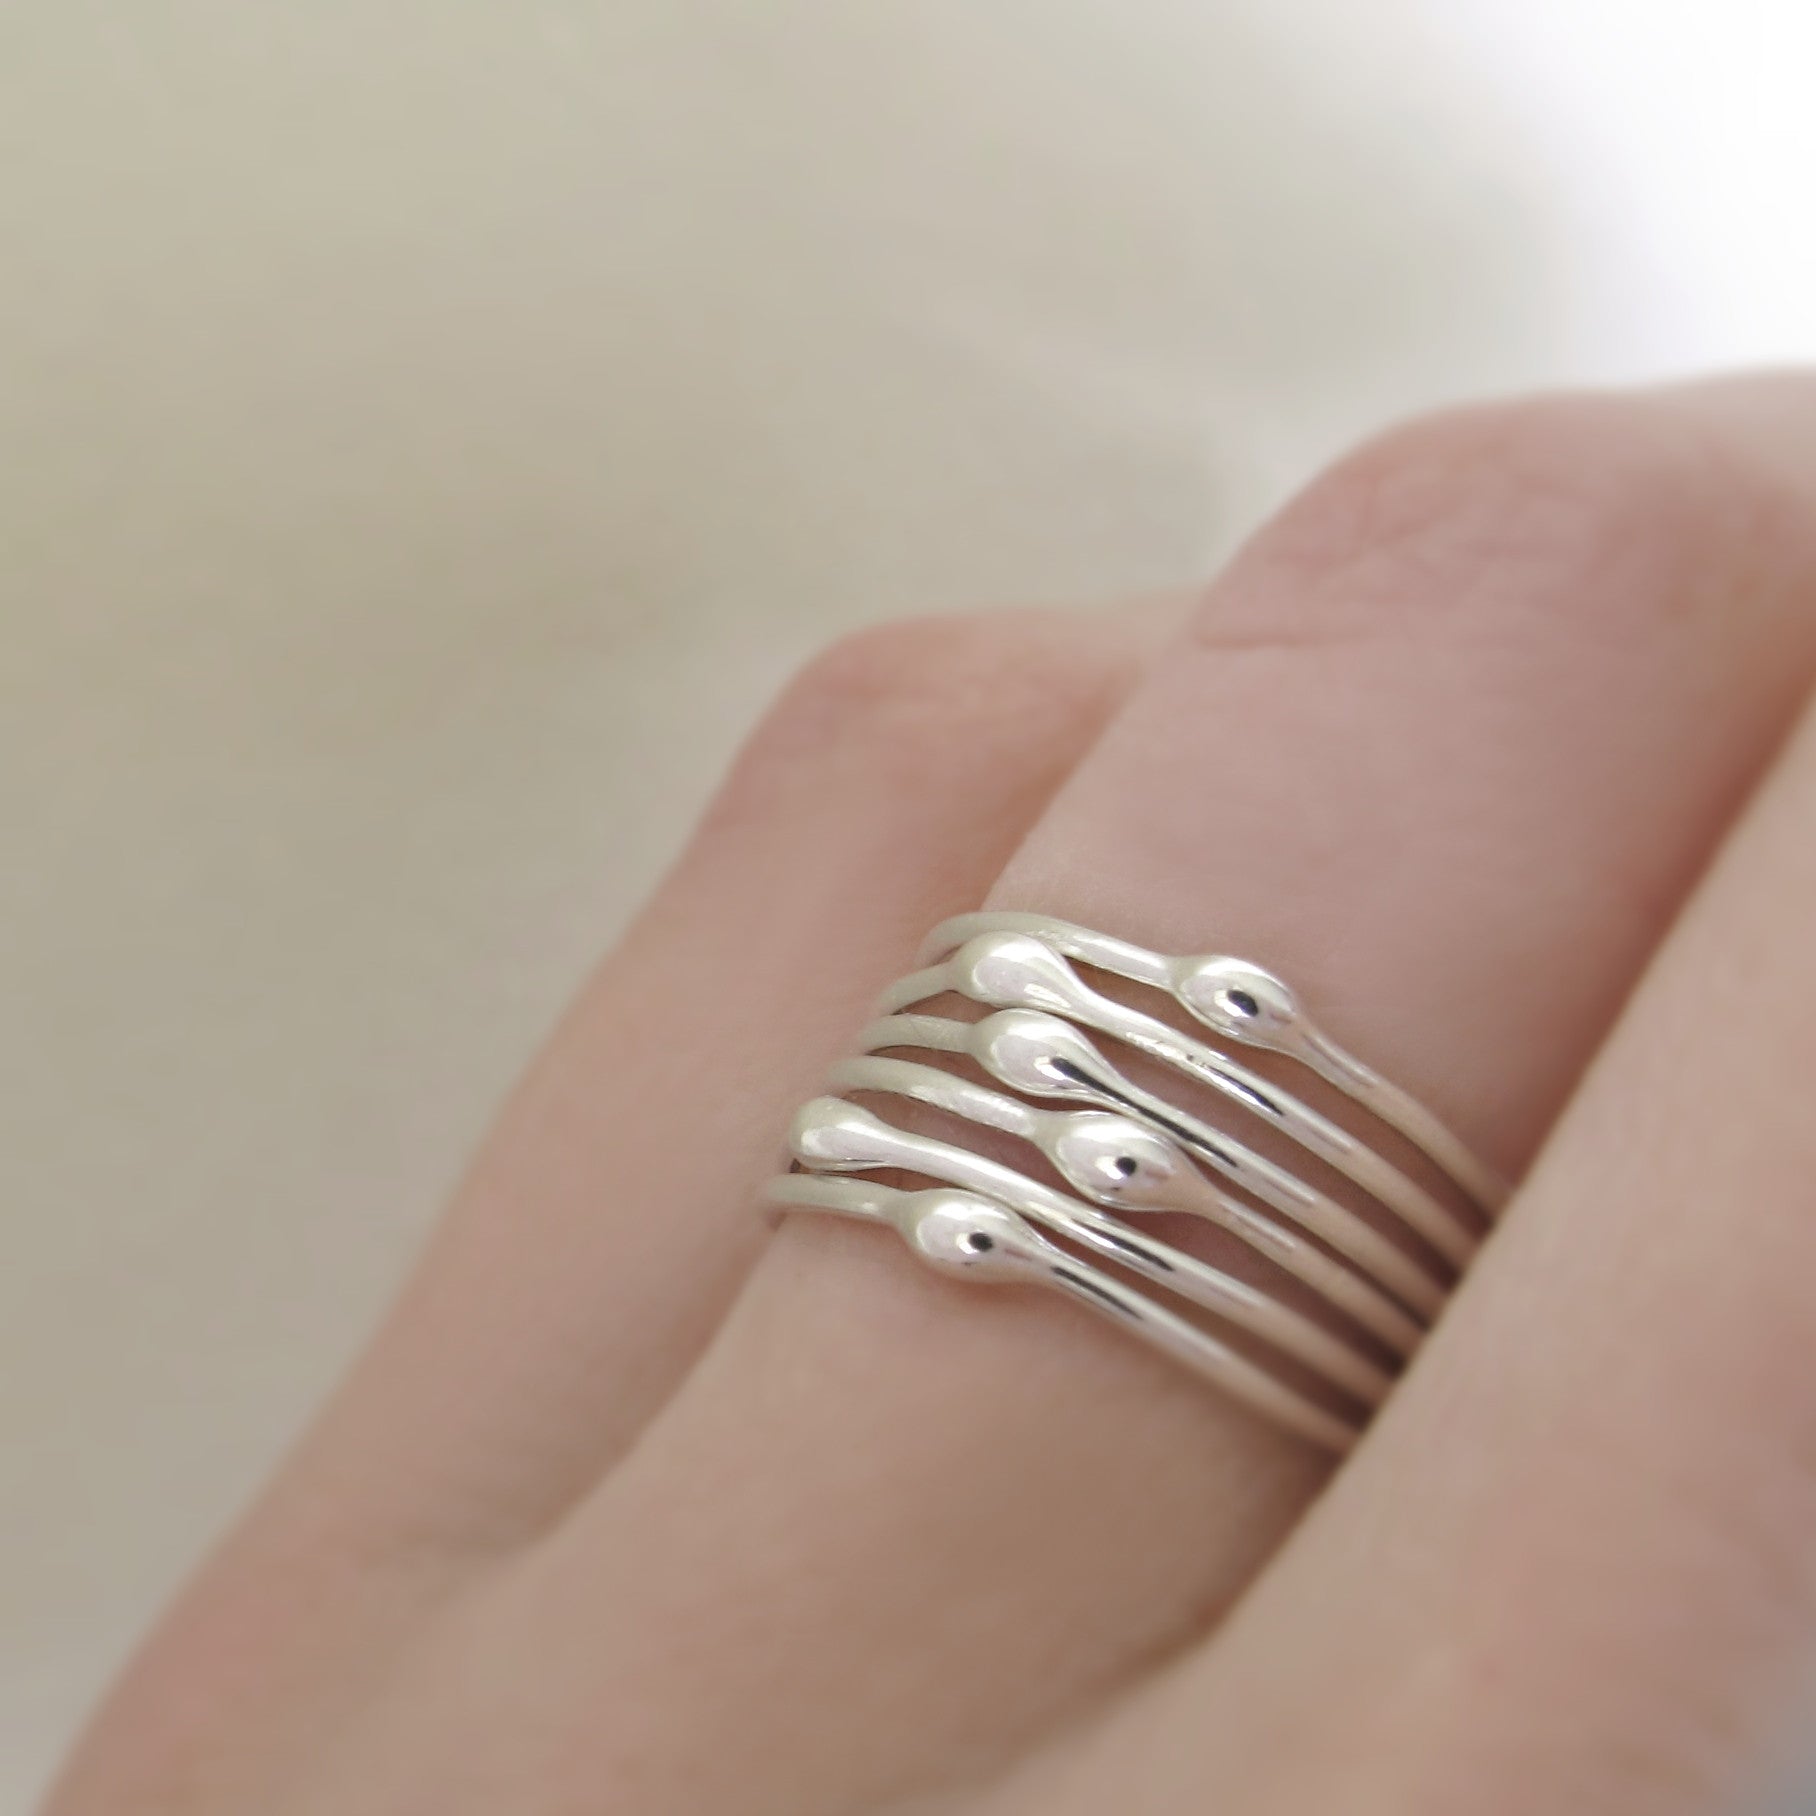 rings - Elizabeth Scott Jewelry